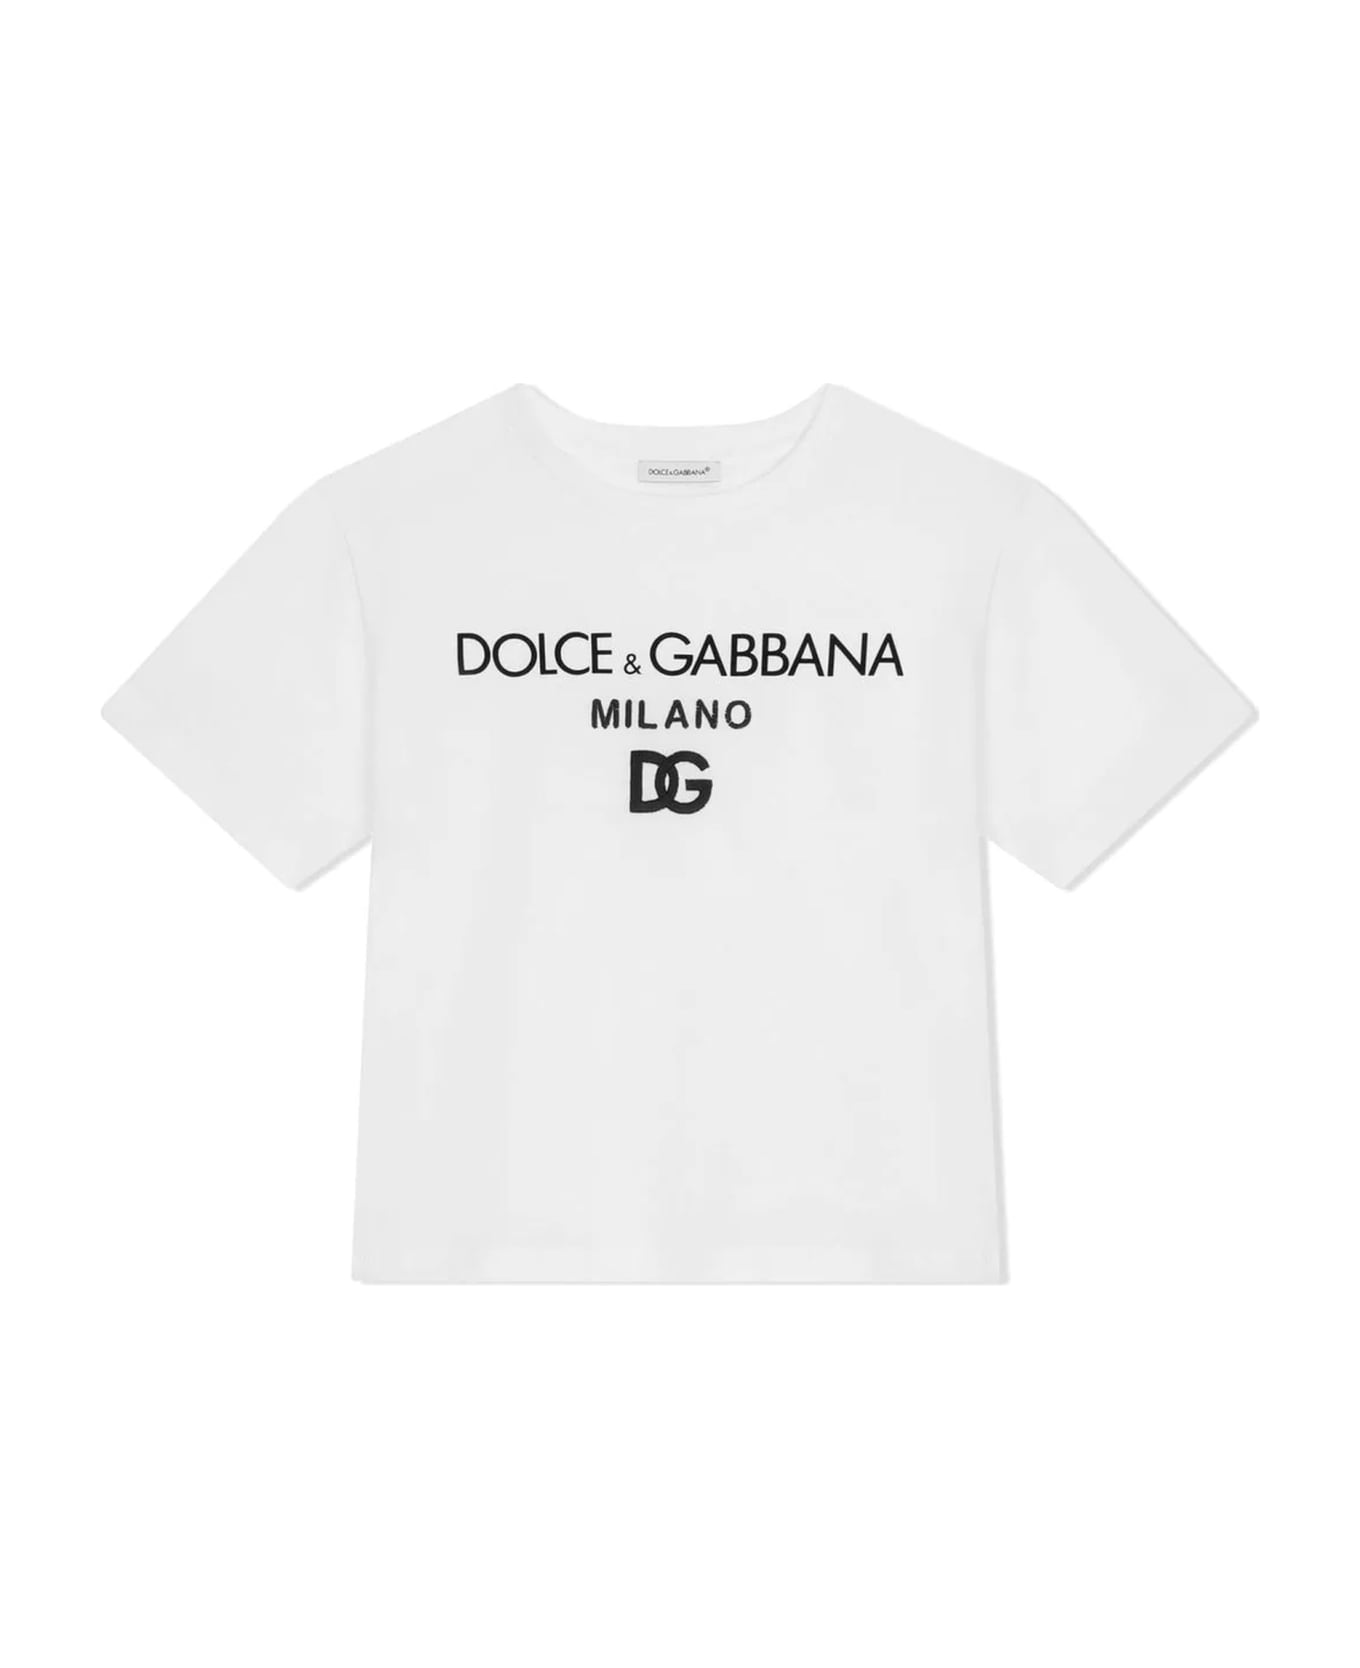 Dolce & Gabbana White Cotton T-shirt - WHITE